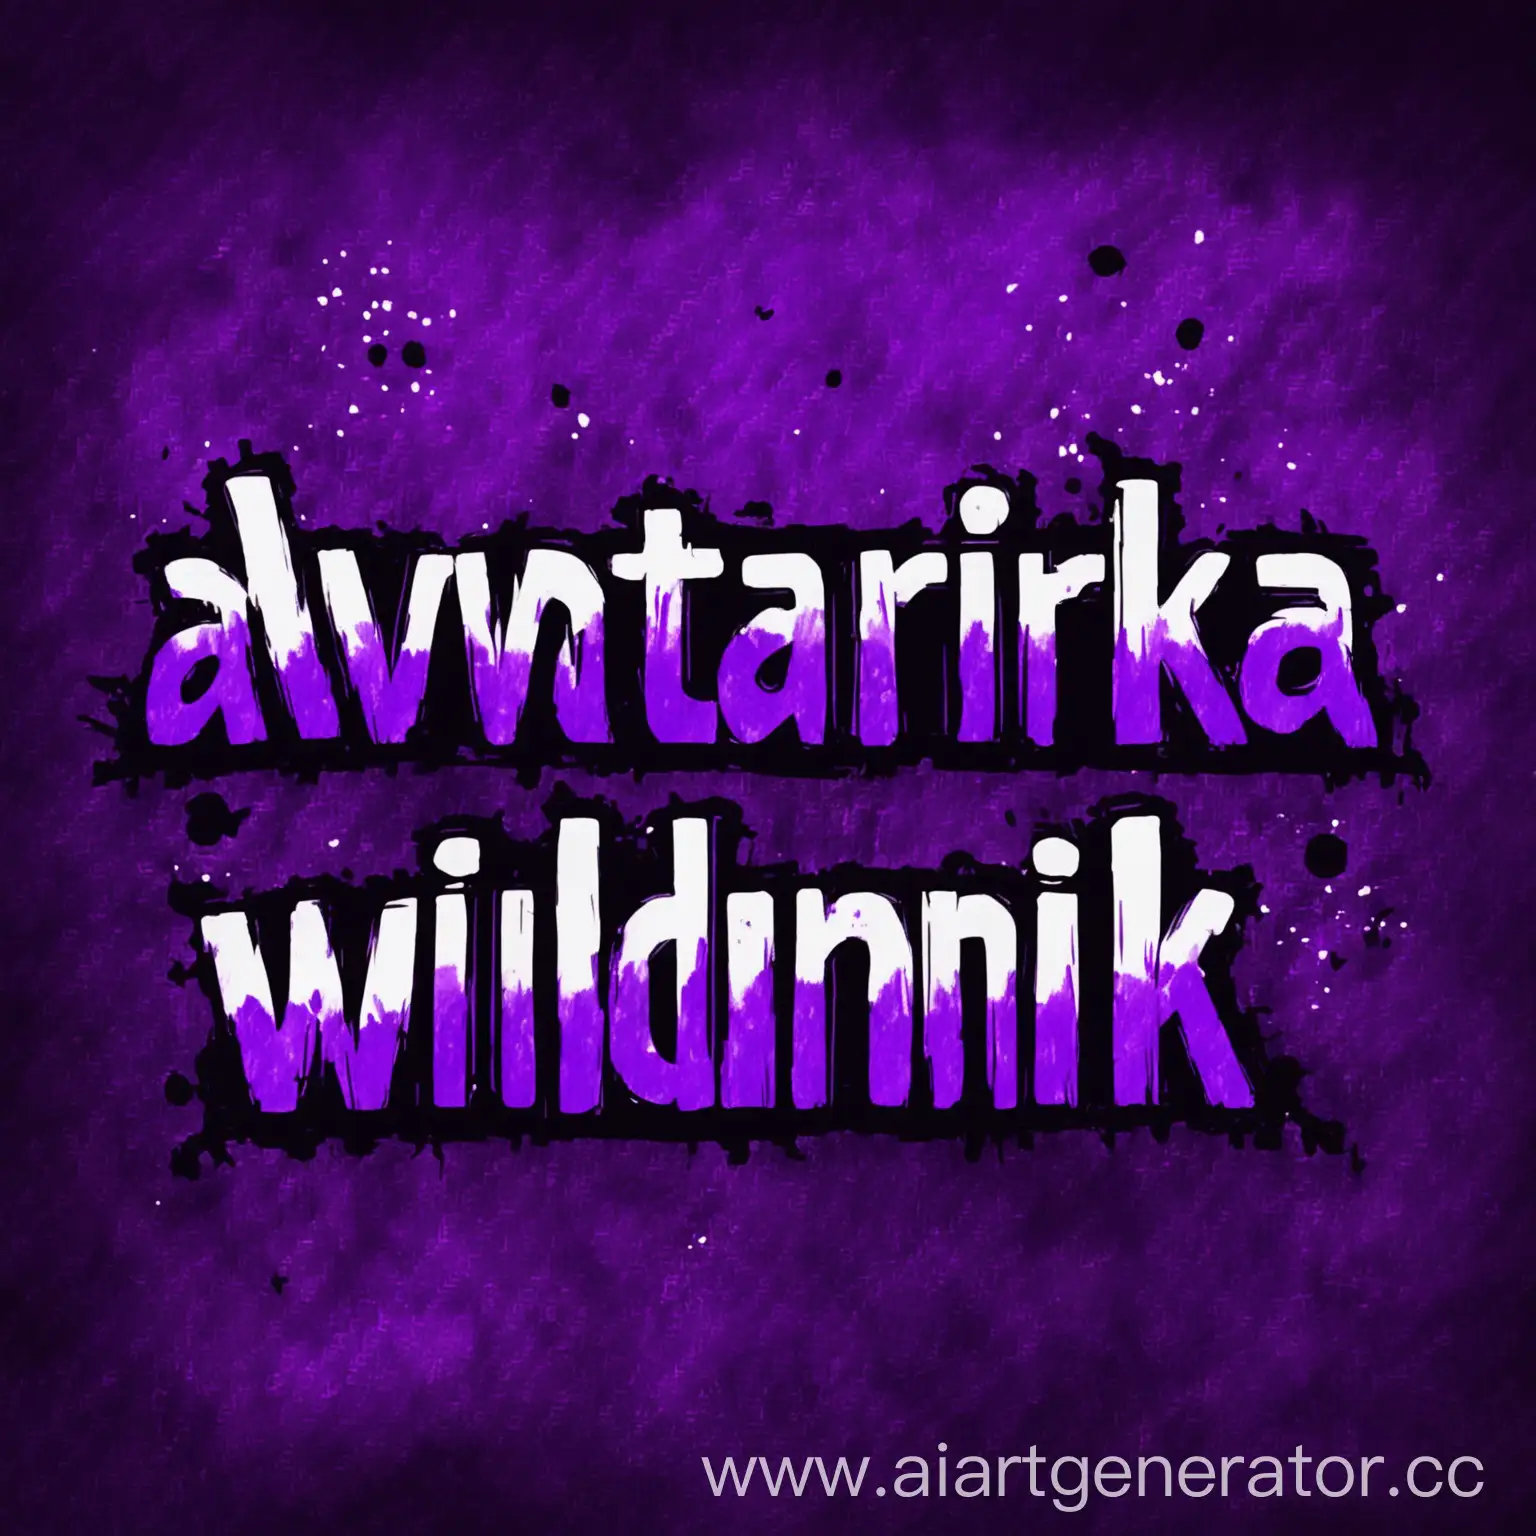 аватарка для канала с надписью wildneik в фиолетовых красках